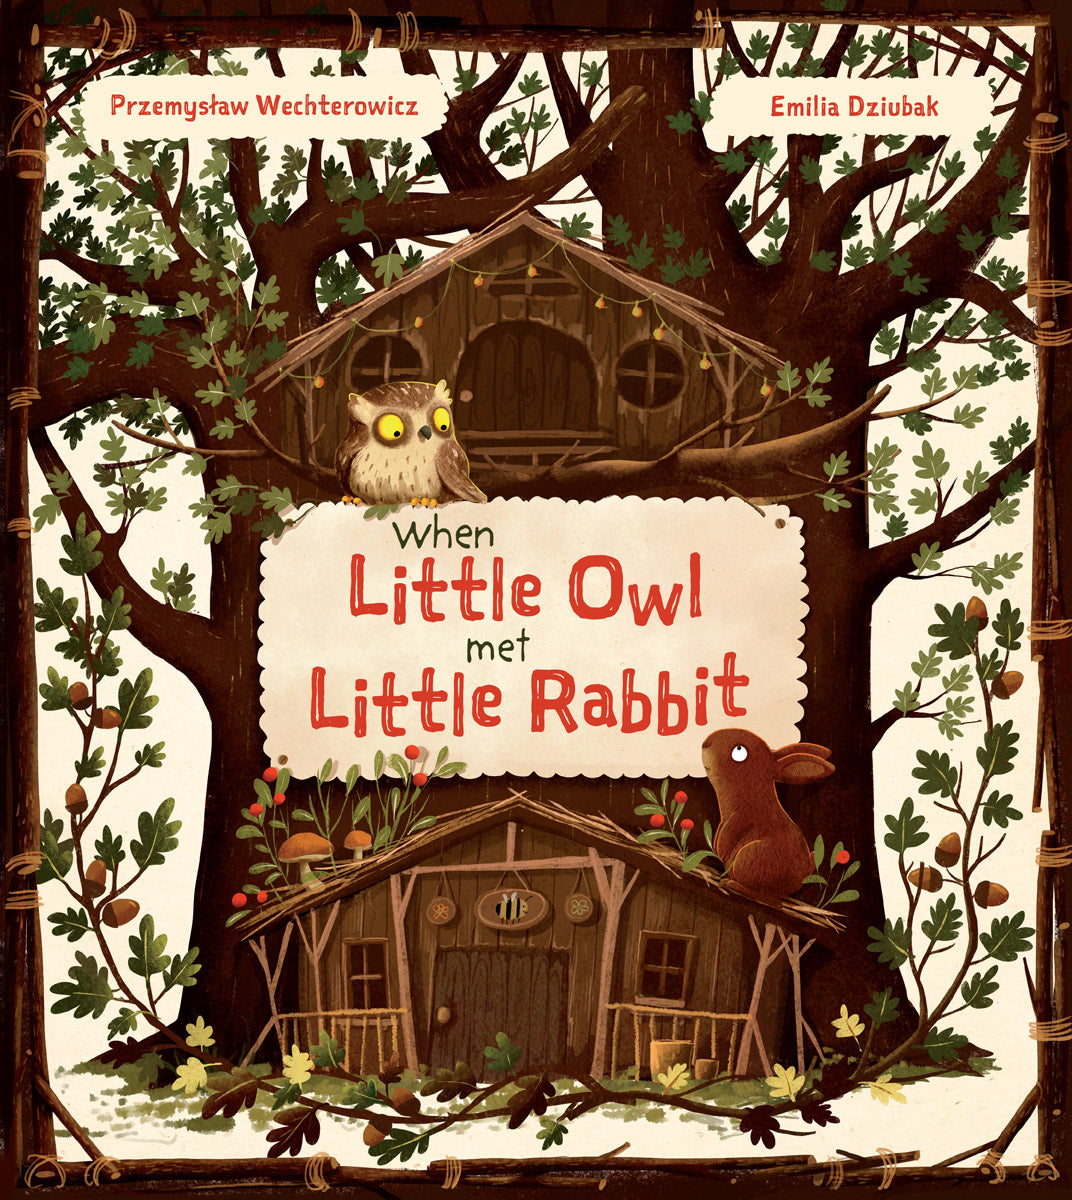 When Little Owl Met Little Rabbit by Przemystaw Wechterowicz, illustrated by Emilia Dziubak: